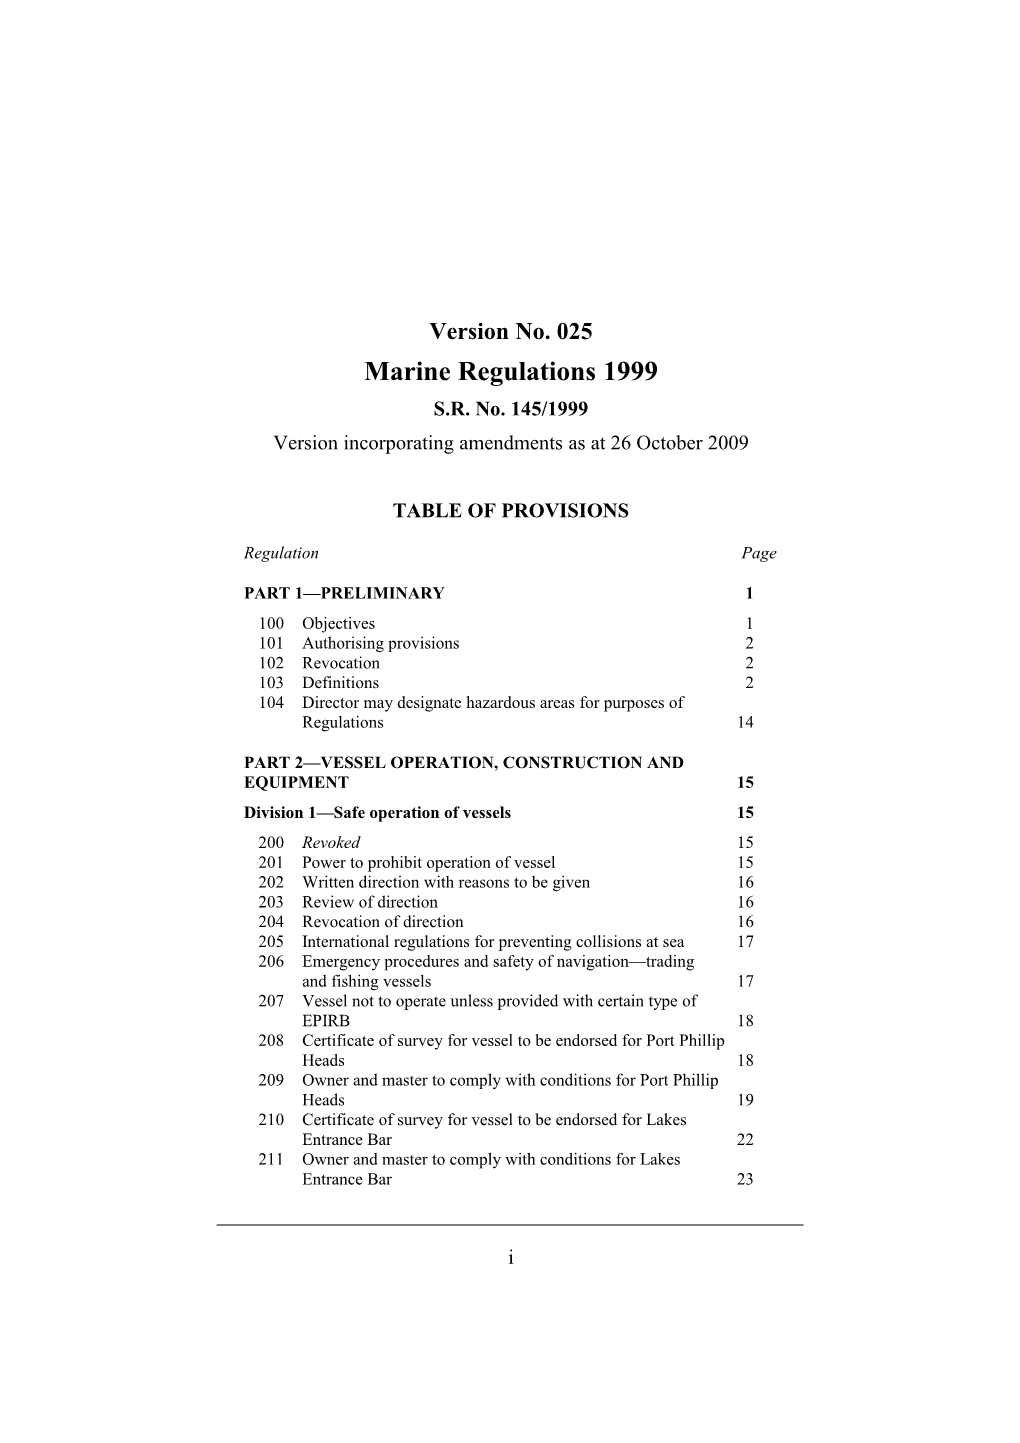 Version Incorporating Amendments As at 26 October 2009